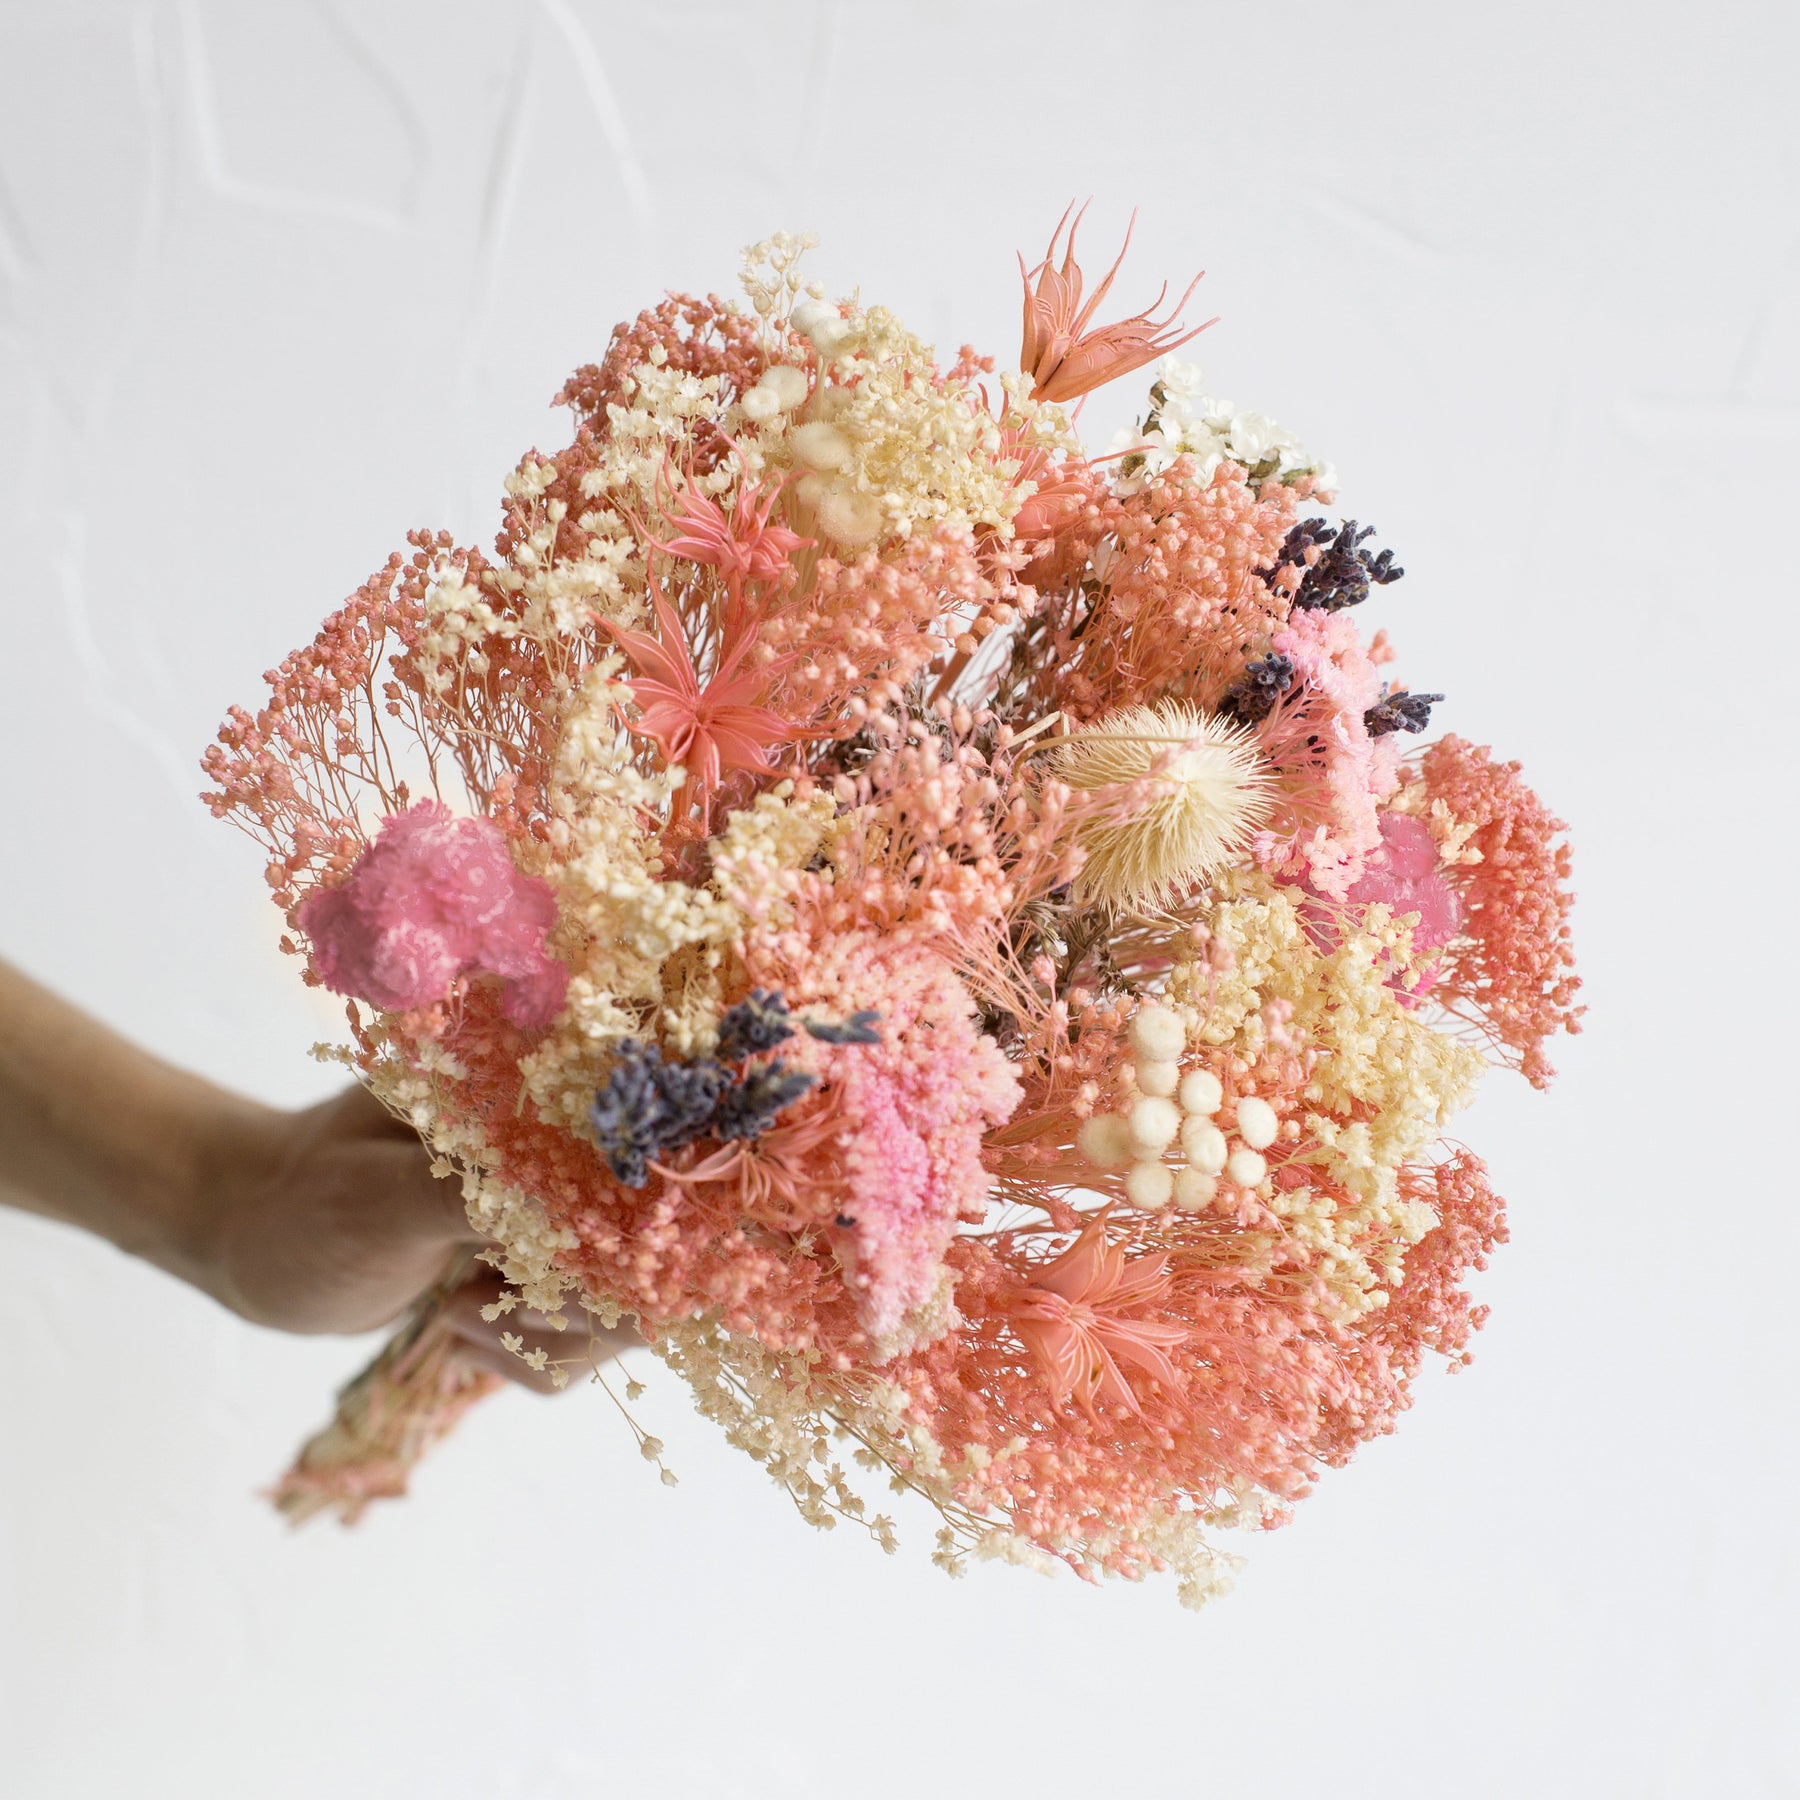 Strawberry Fields Dried Bouquet – Salt & Sundry